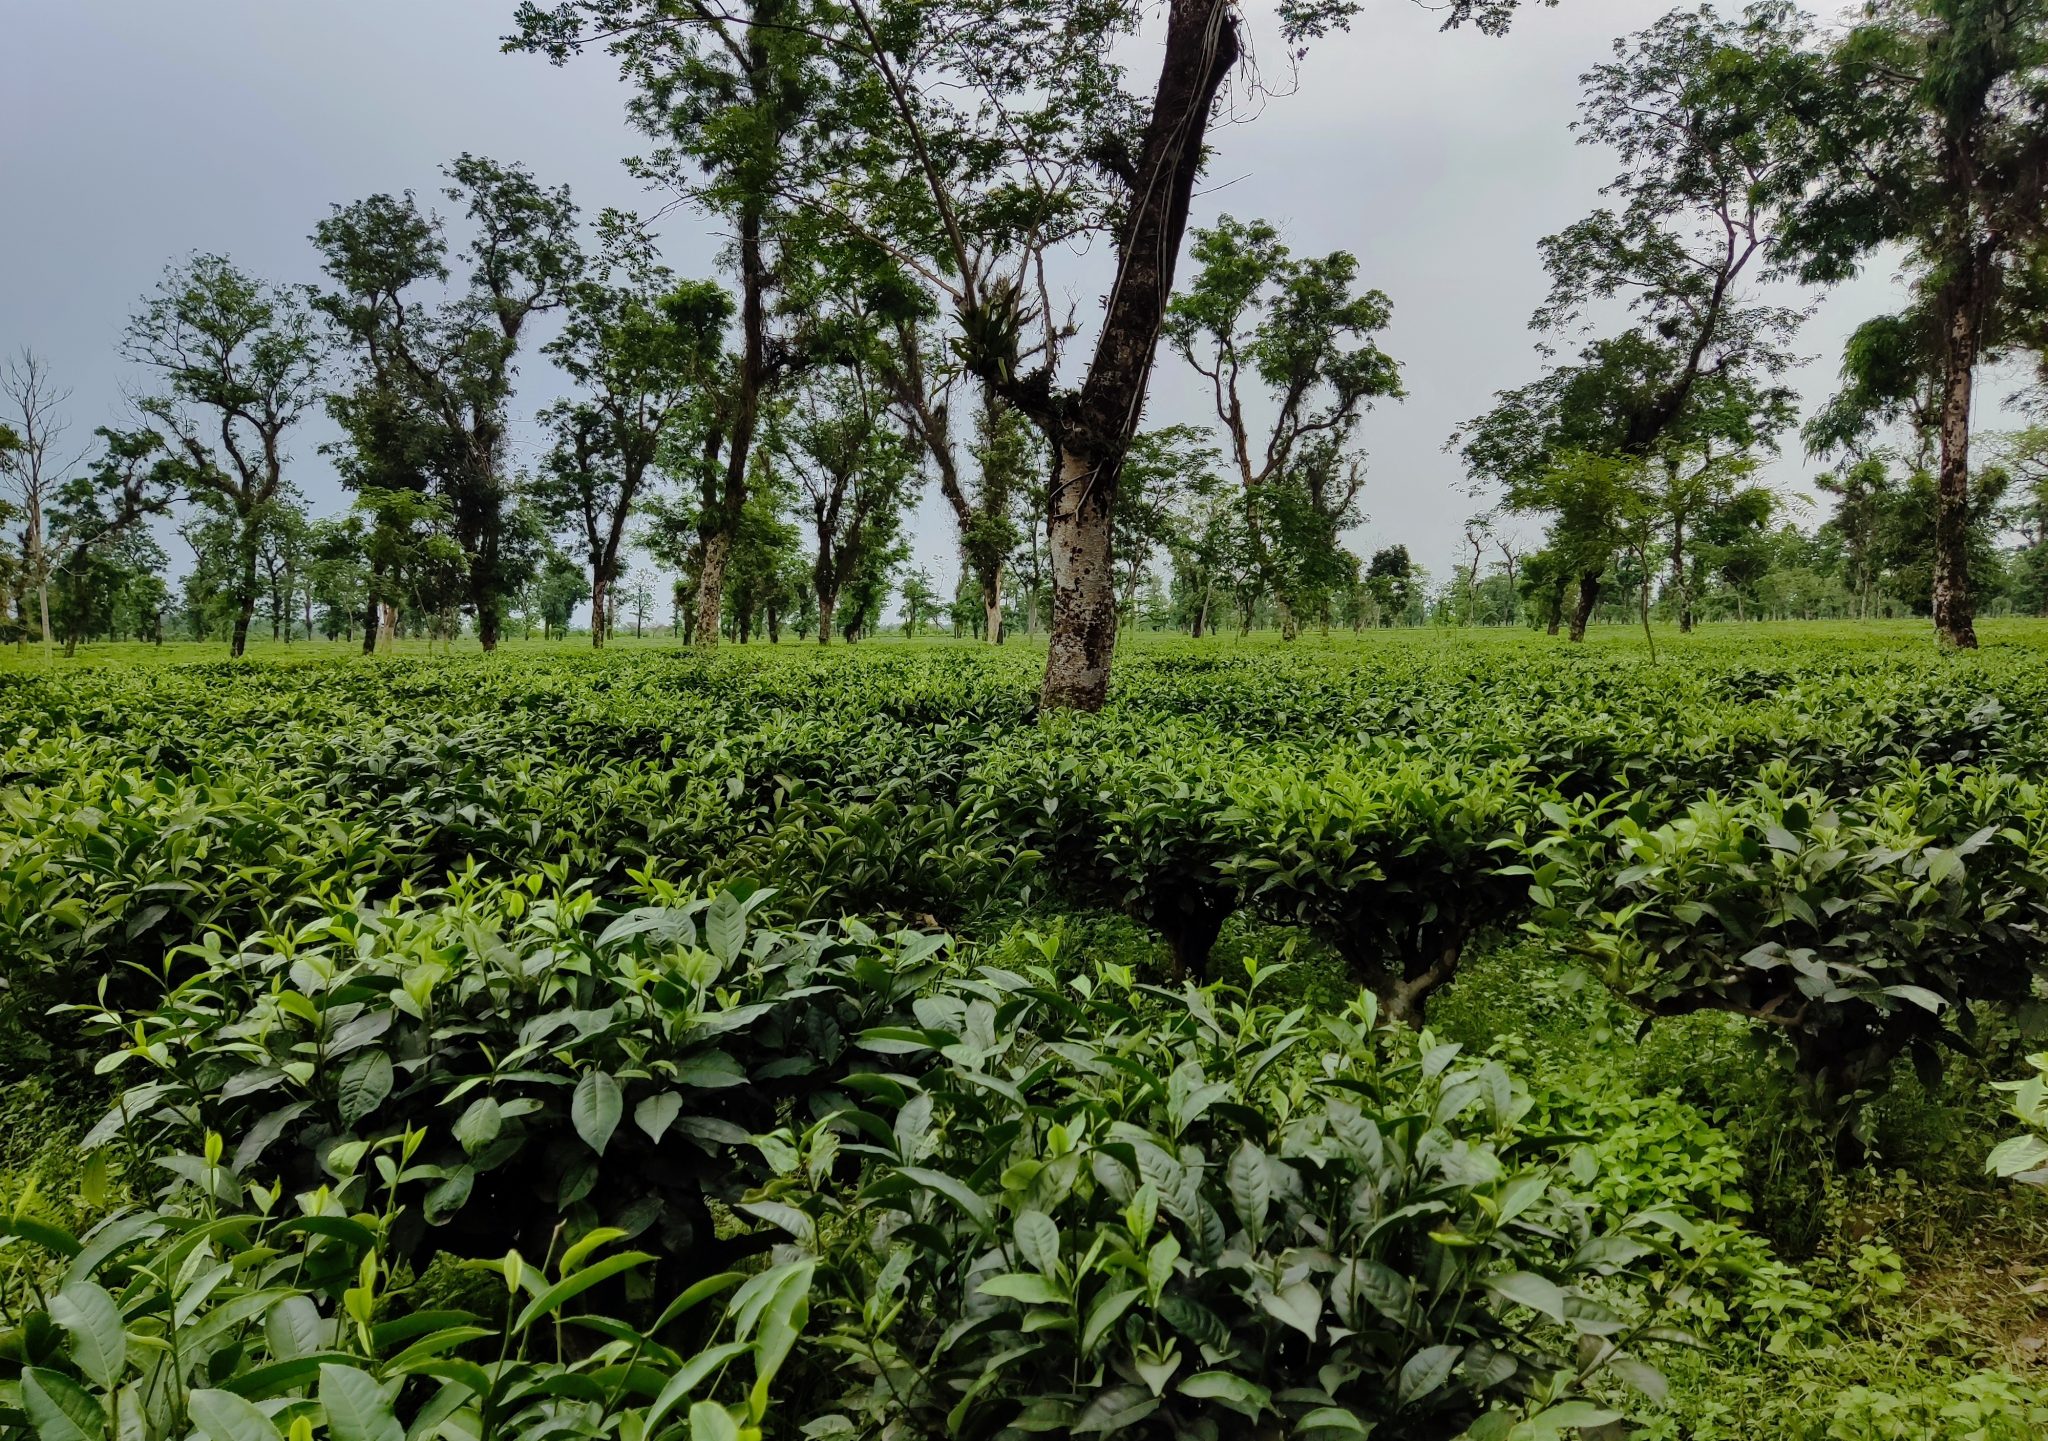 A beautiful Tea garden in Sylhet, Bangladesh.